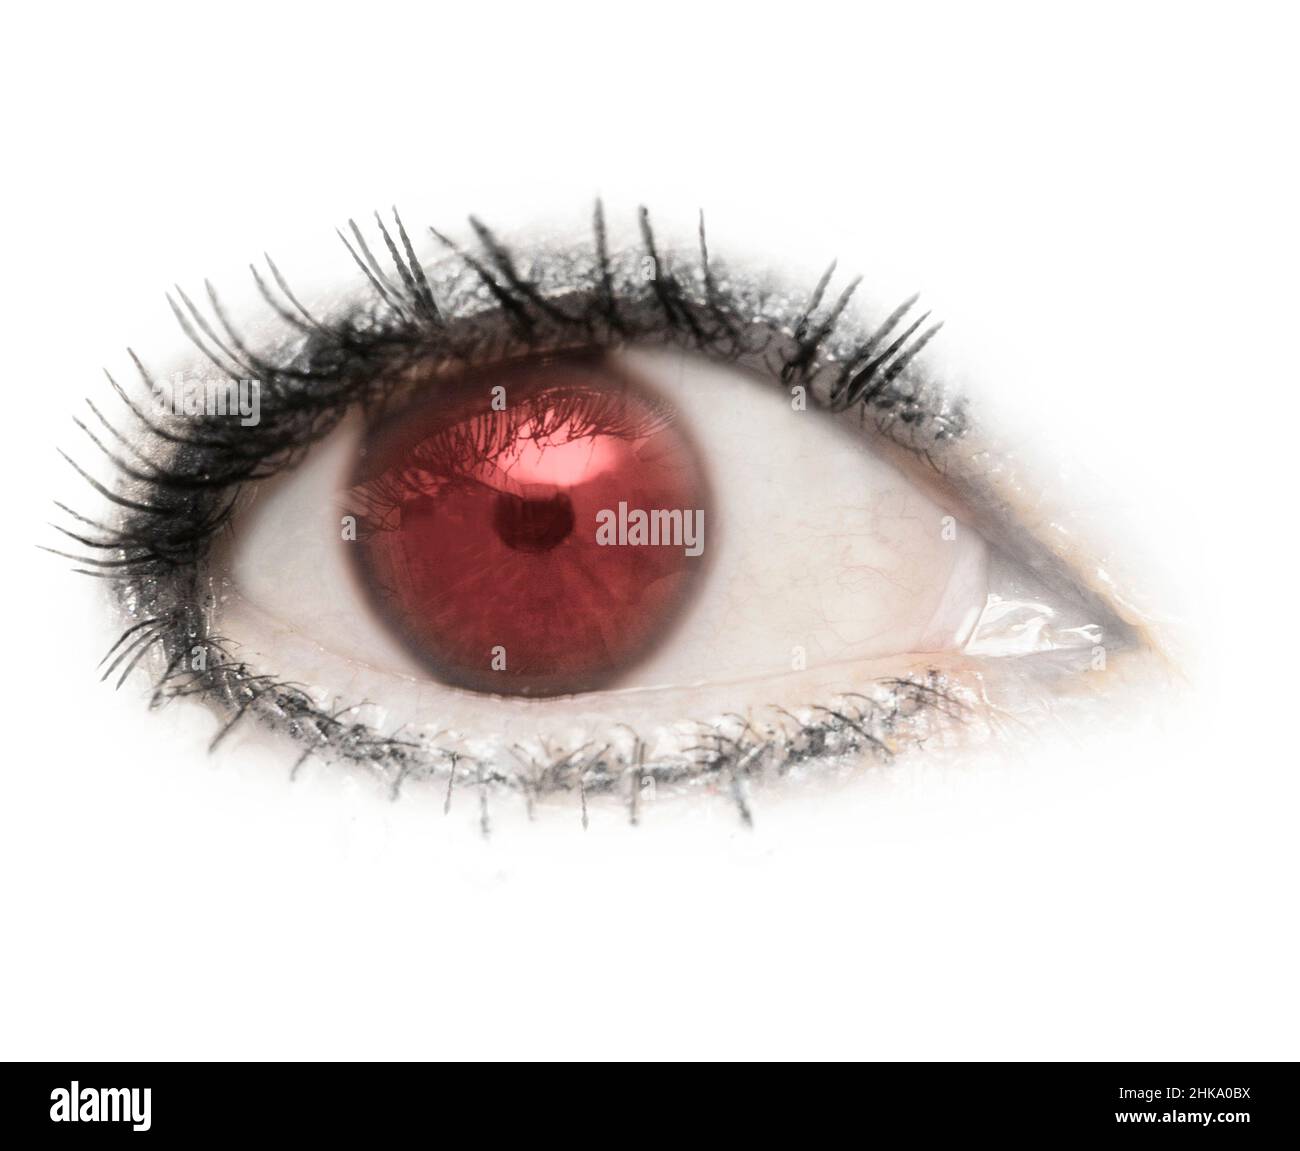 An eye, eyeball, red, red eye, isolated with lashes eyelashes on a white background. Eyelid,pupil,sclera,iris. Stock Photo